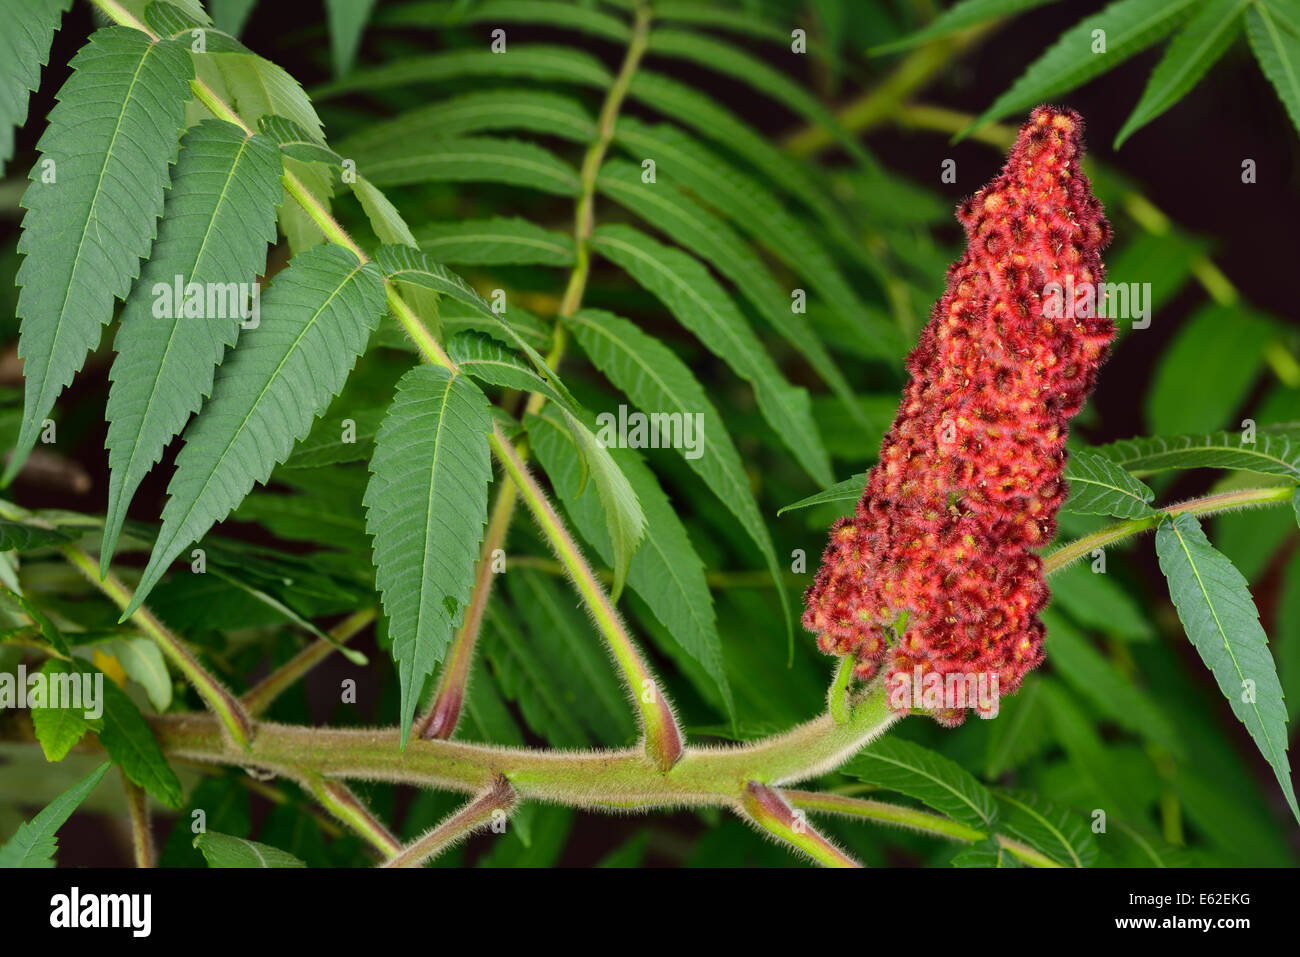 Nahaufnahme von roten Steinfrucht und fuzzy Stamm von einem Staghorn Sumach mit grünen zusammengesetzte Blätter Stockfoto